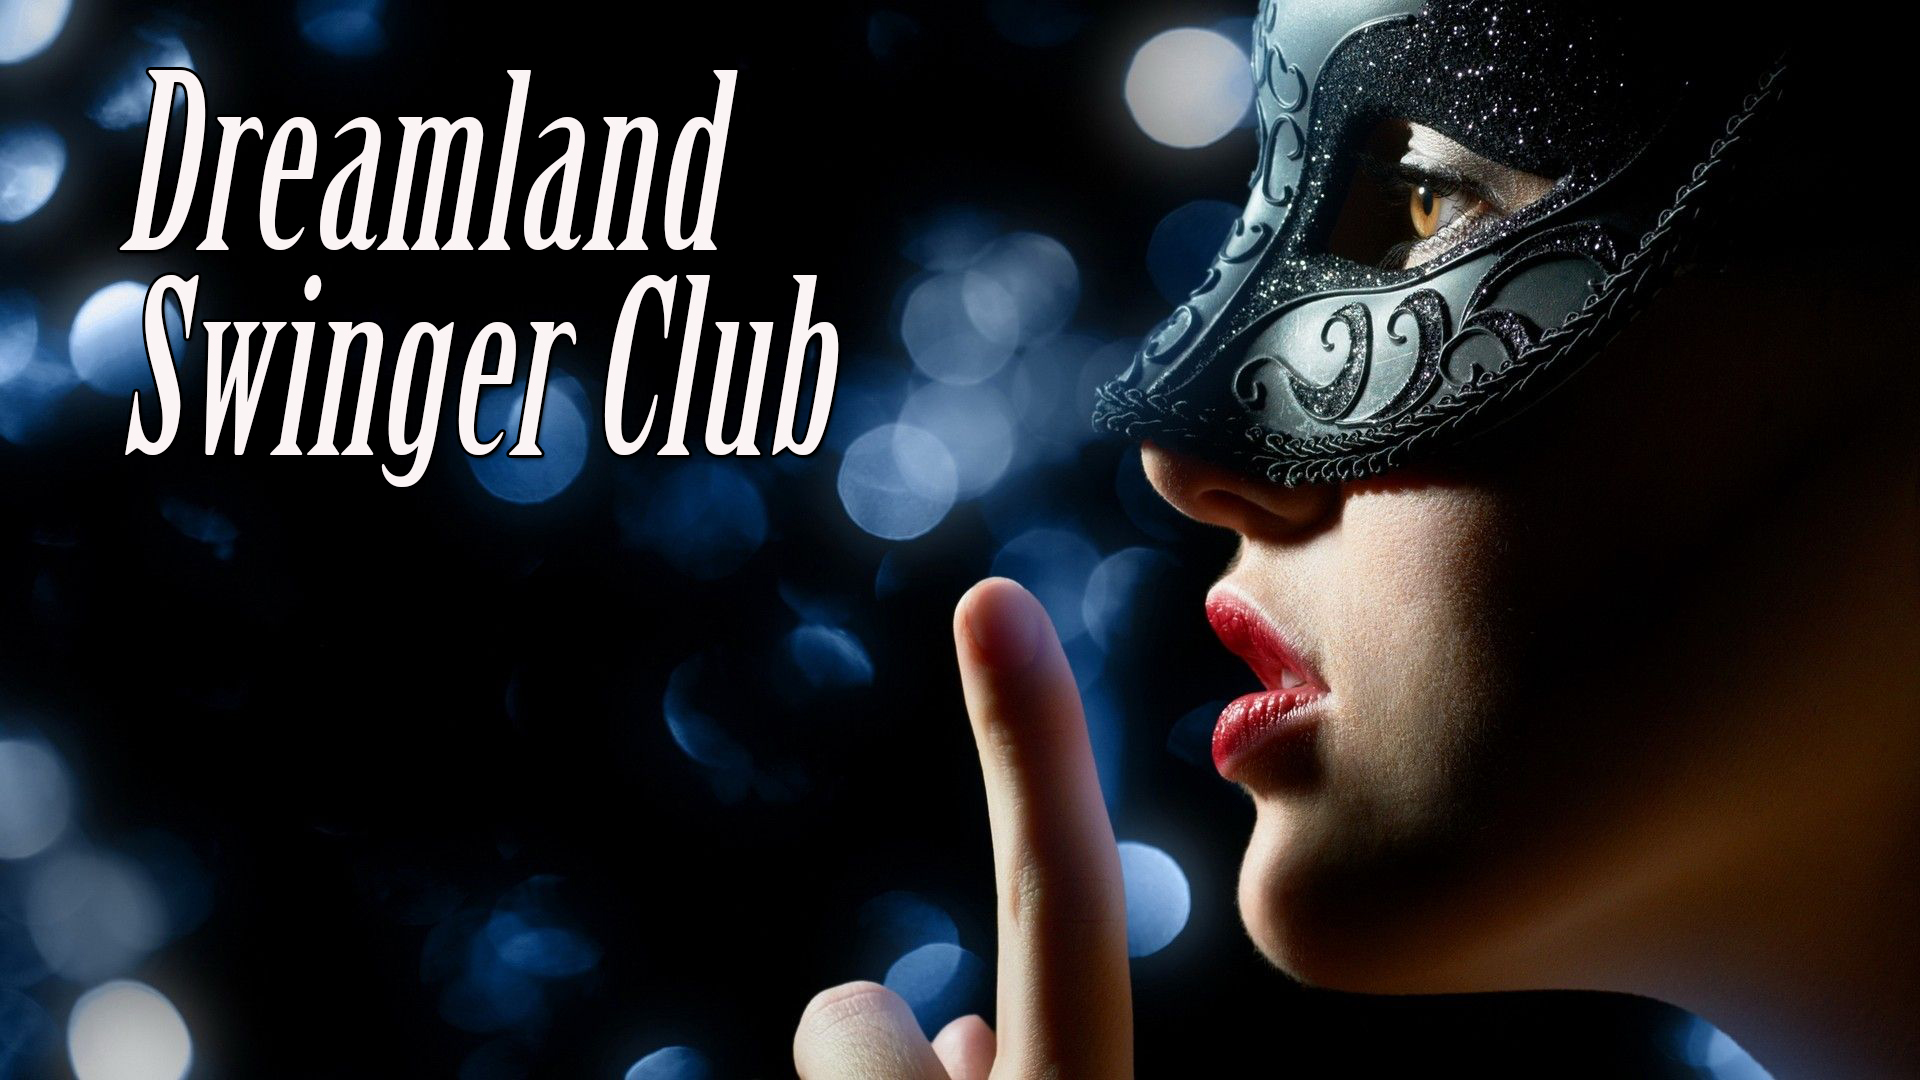 Dreamland Swinger Club